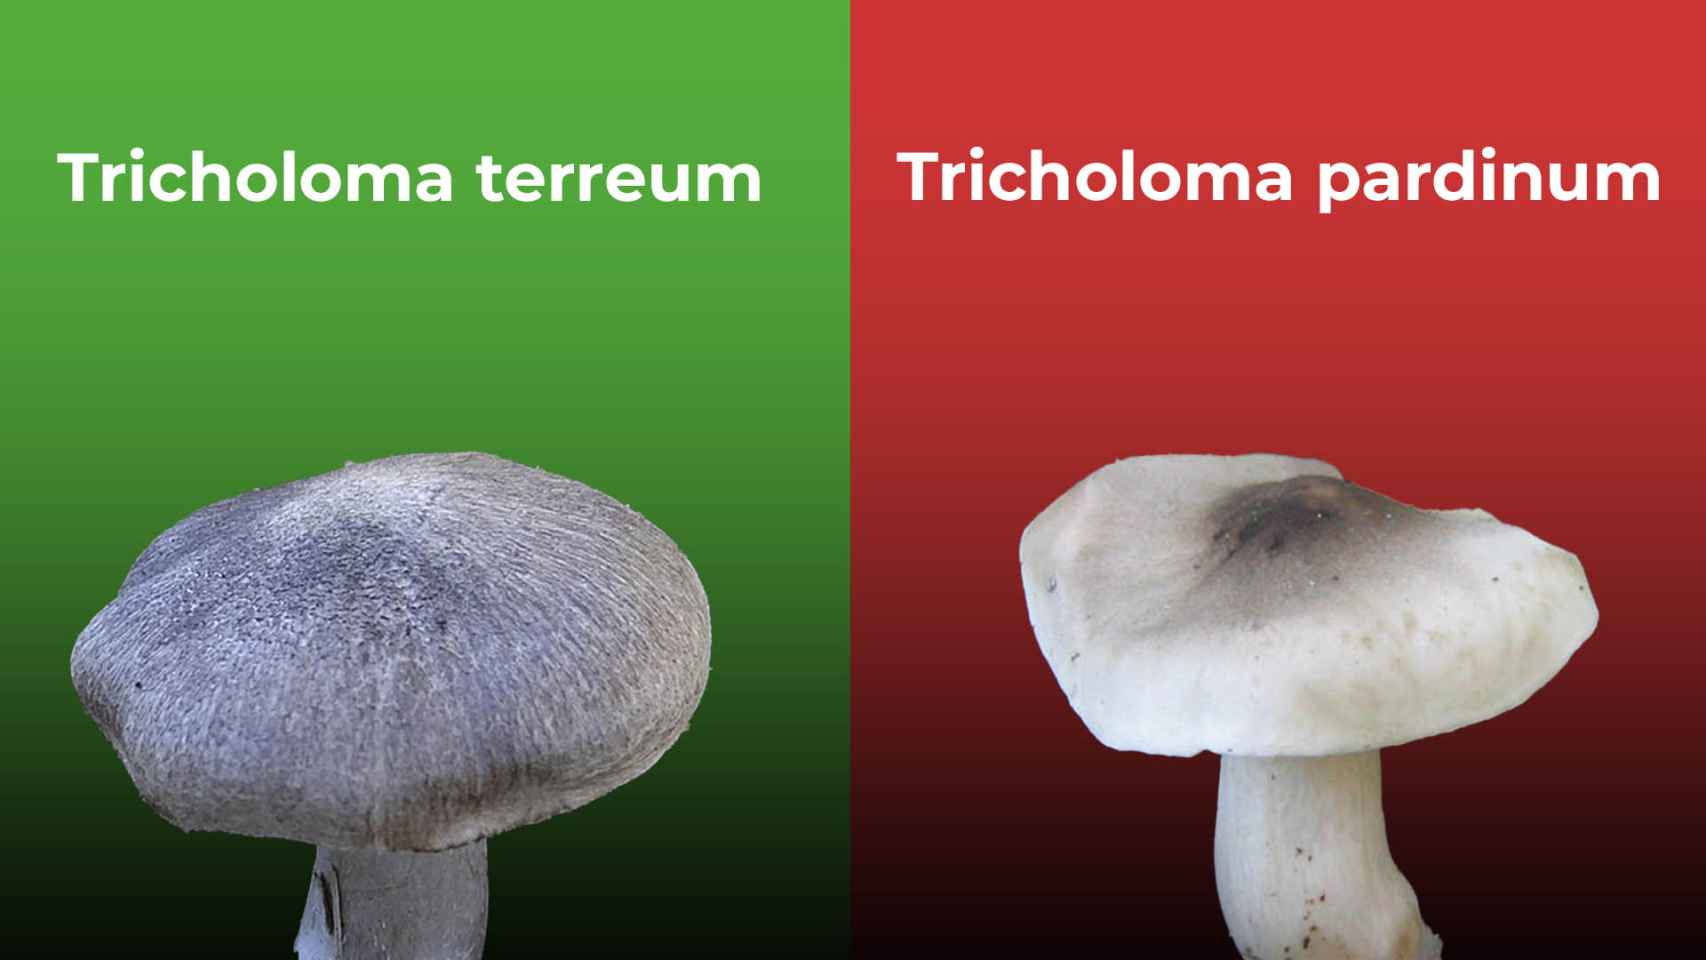 A la izquierda un 'tricholoma terreum', un hongo comestible; a la derecha una 'tricholoma pardinum', que es tóxico